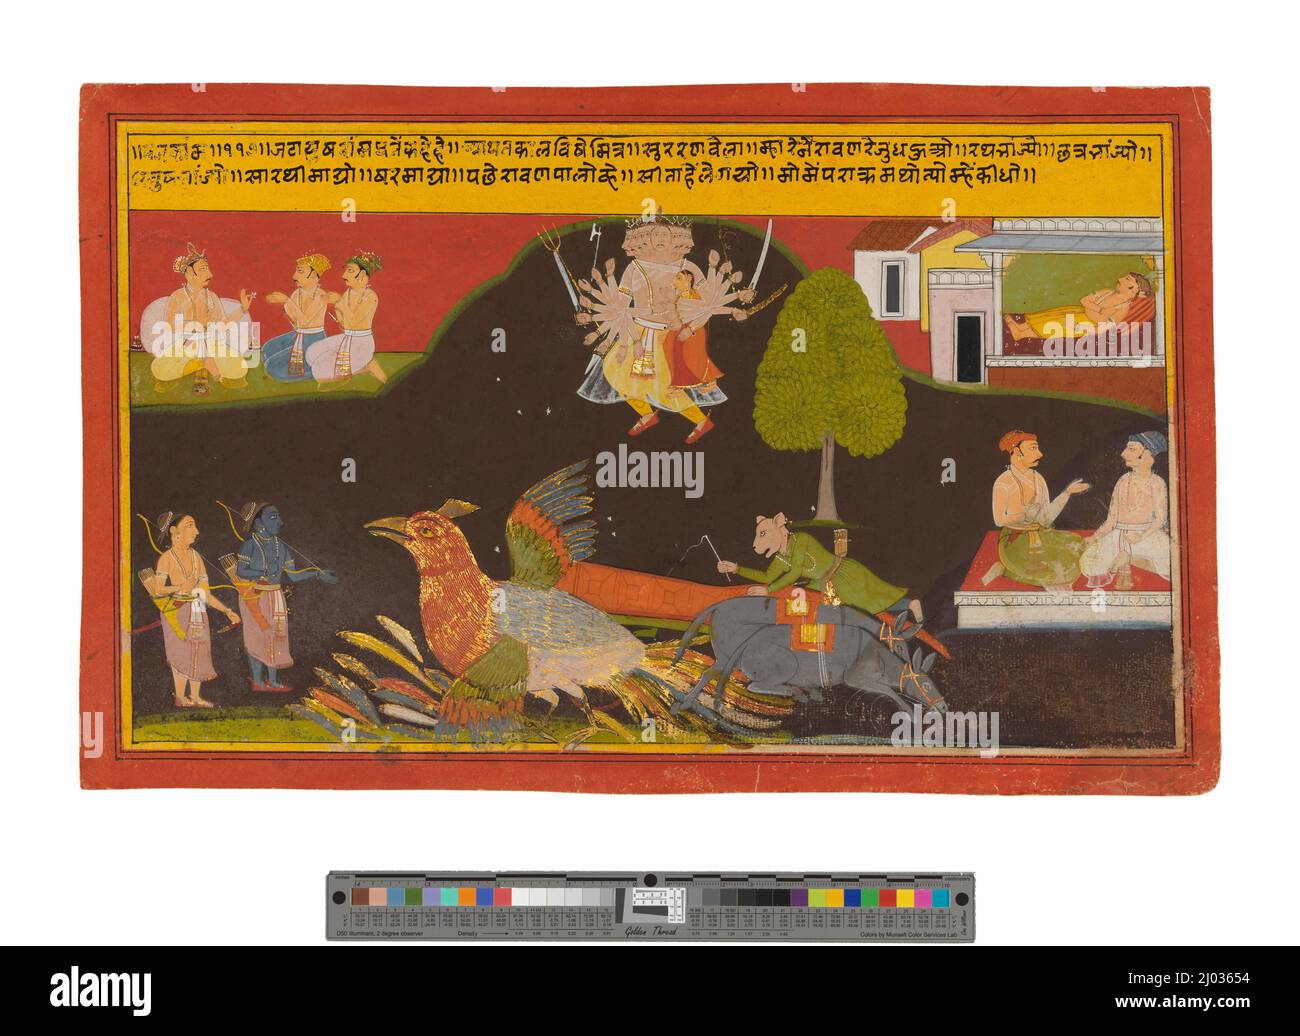 L'enlèvement de Sita, Folio d'un Ramayana (aventures de Rama). Inde, Rajasthan, Mewar, 1675-1700. Mises en plan; aquarelles. Aquarelle opaque sur papier Banque D'Images